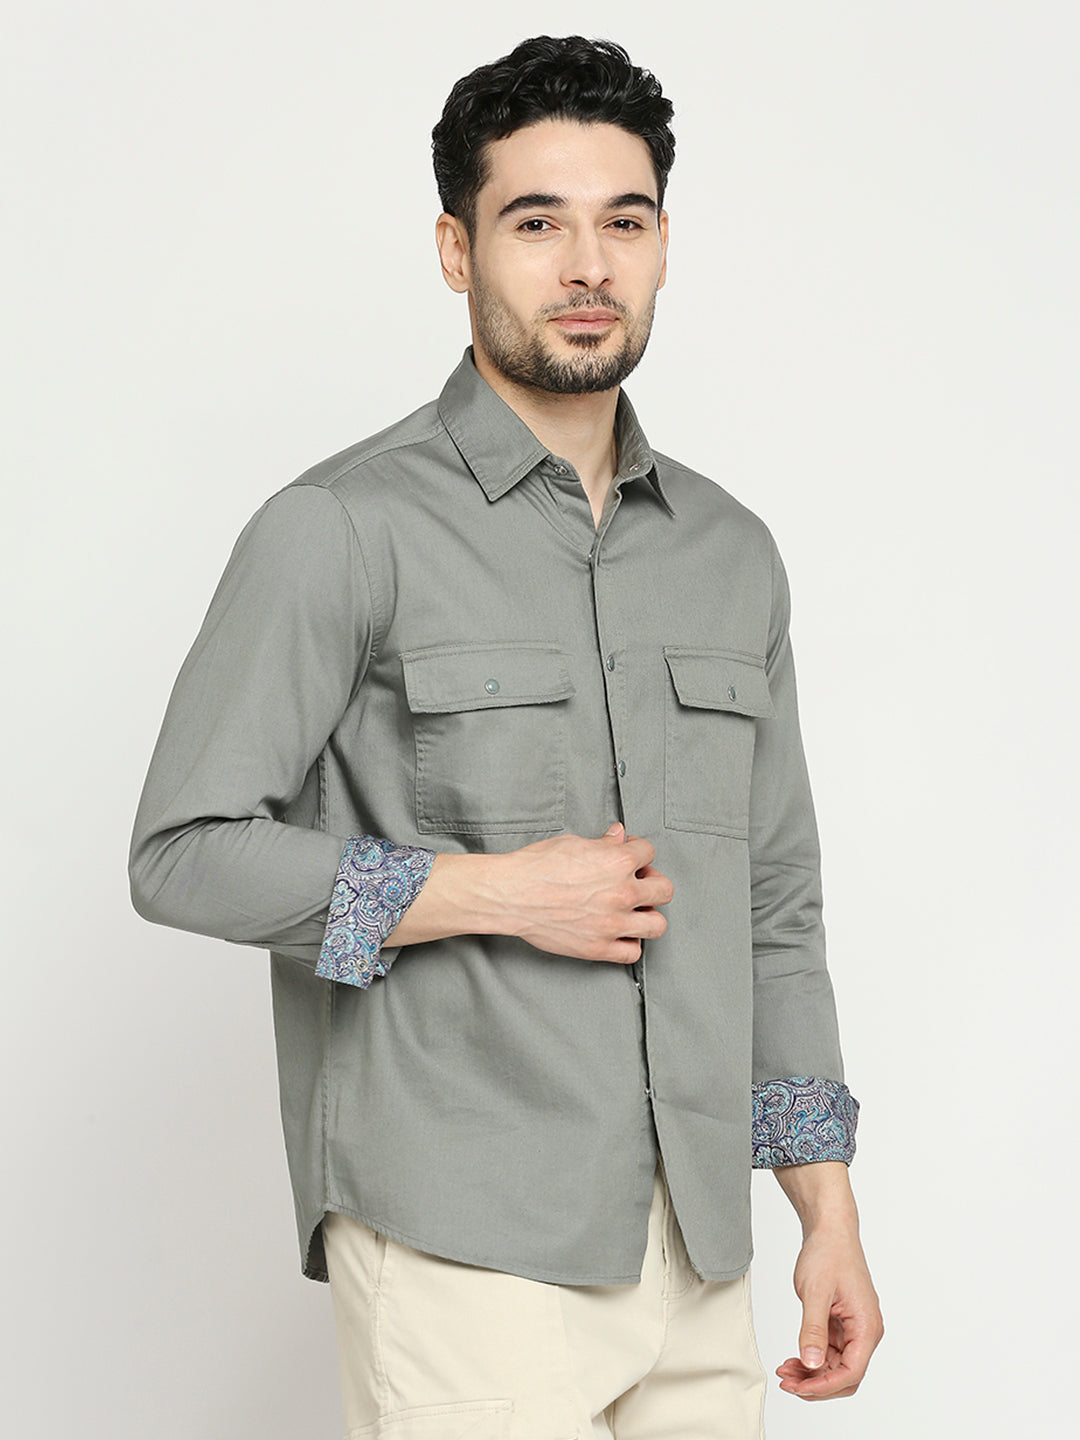 Buy Blamblack Men'S Solid Full Sleeves Regular Fit Spread Collar Shirt